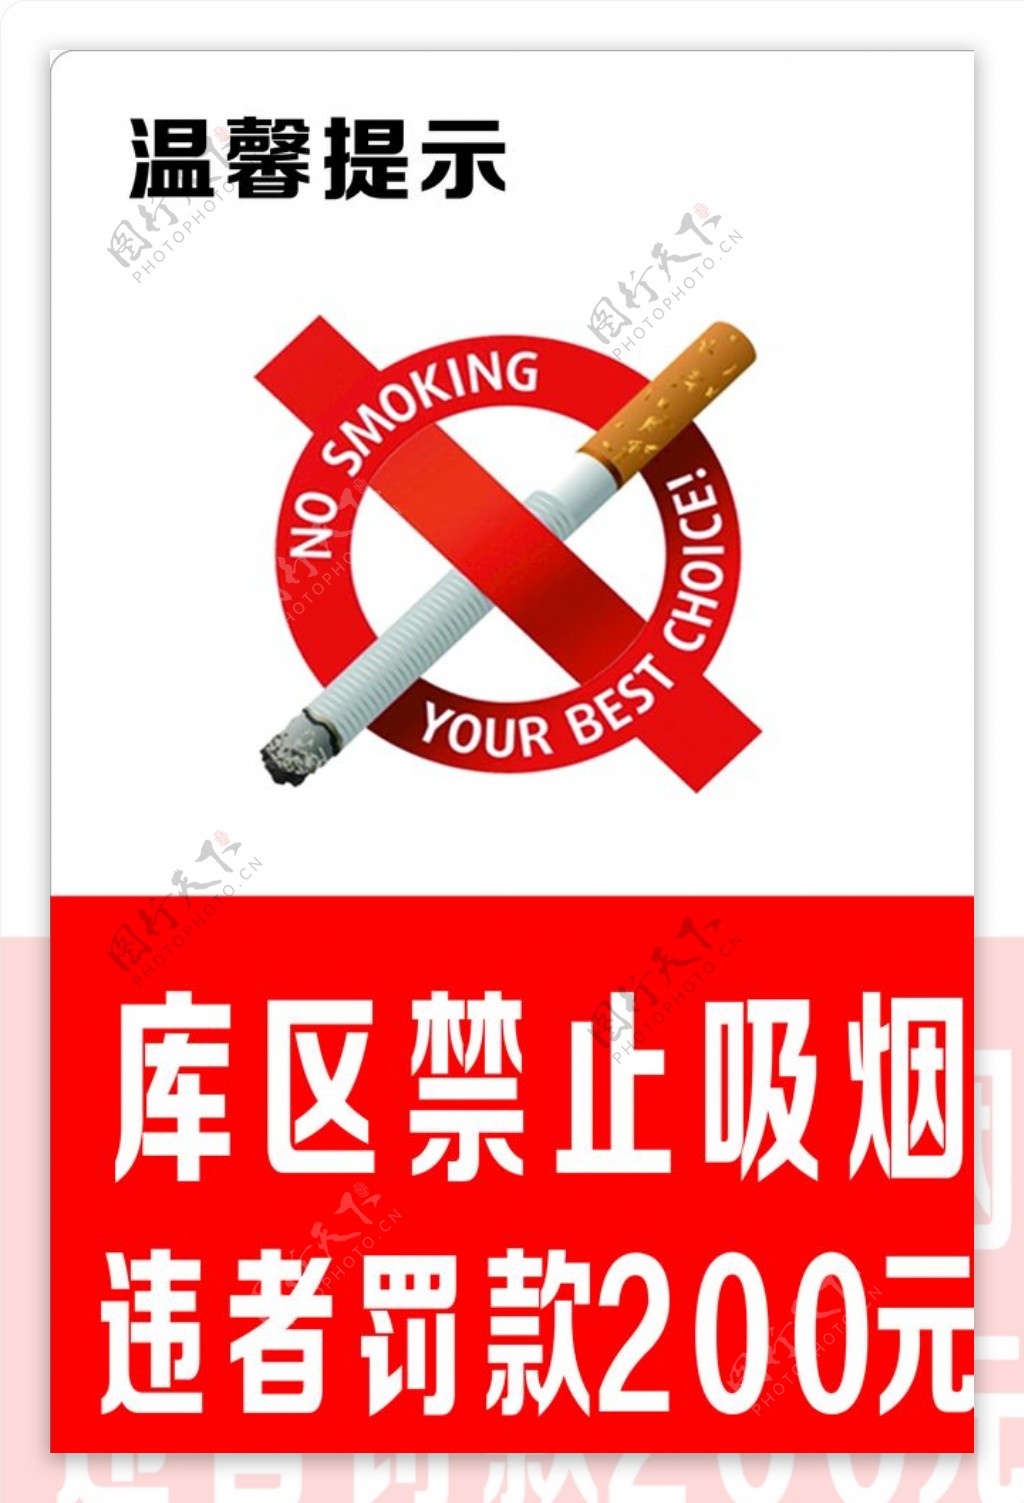 禁止吸烟严禁吸烟禁止吸烟标图片